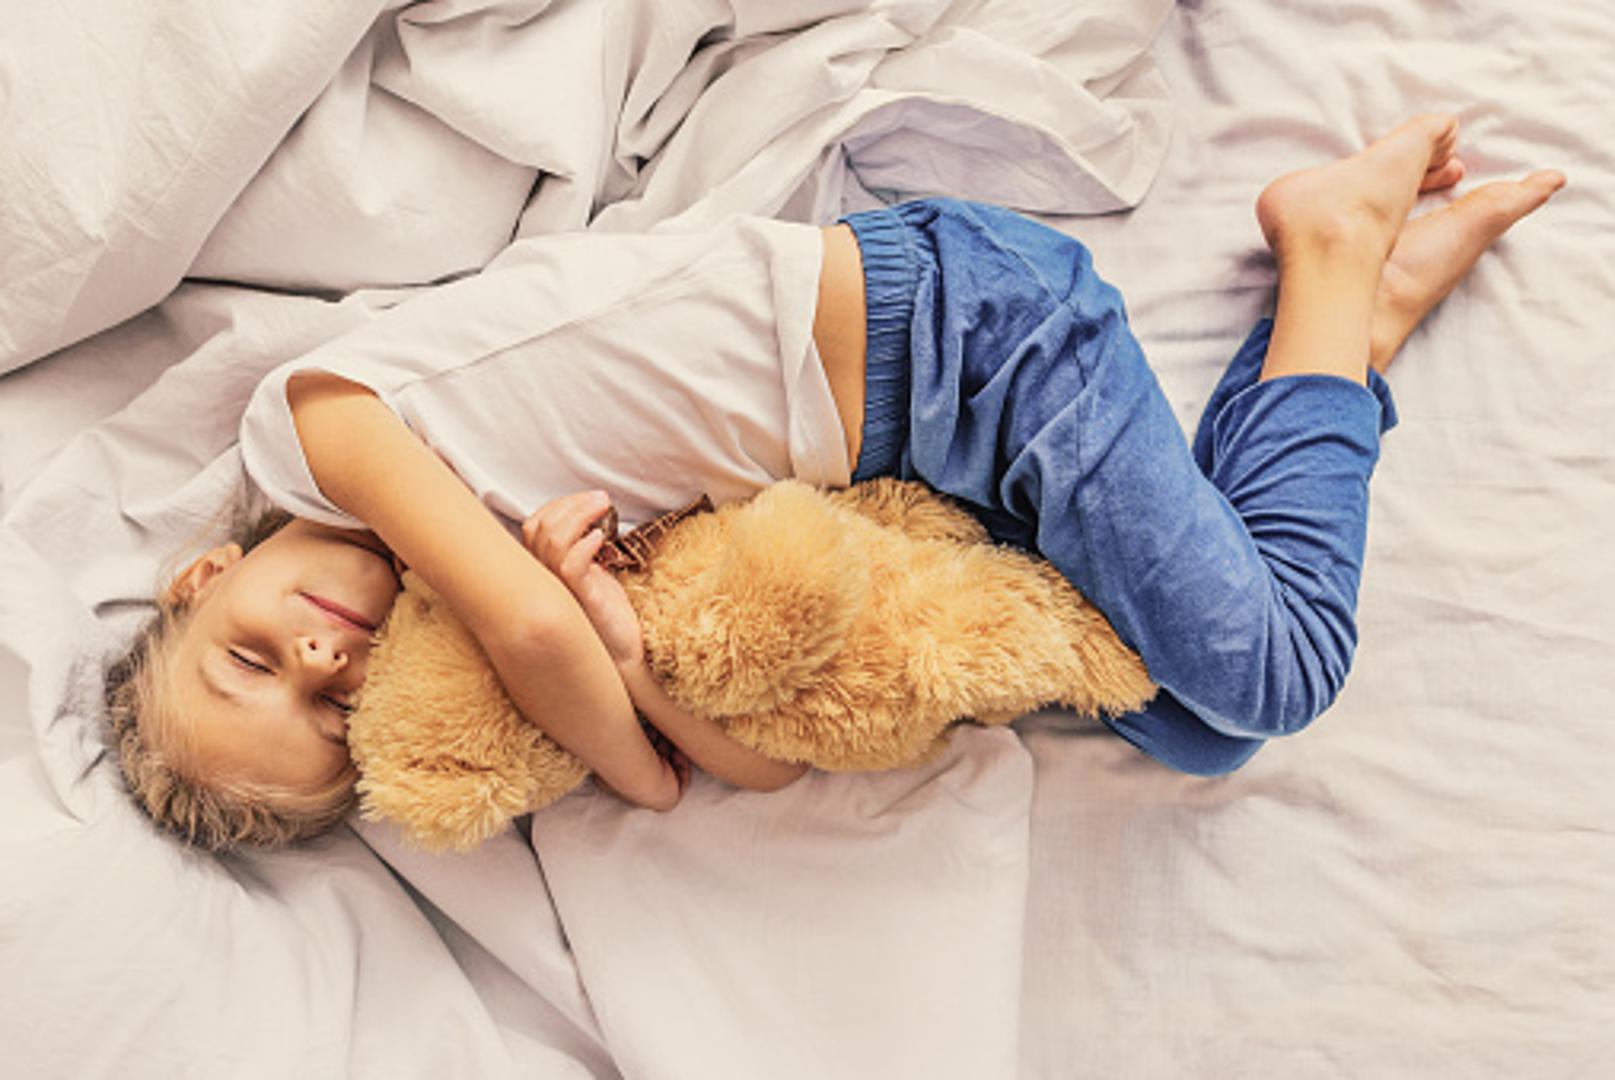 Najpopularniji i najčešći položaj spavanja je onaj - fetalni, u kojem spavamo na boku s rukama ispod glave. Prema istraživanju britanskog Sleep Assessment and Advisory Service, 41 posto ljudi spava u ovom položaju, a dvostruko više žena nego muškaraca.